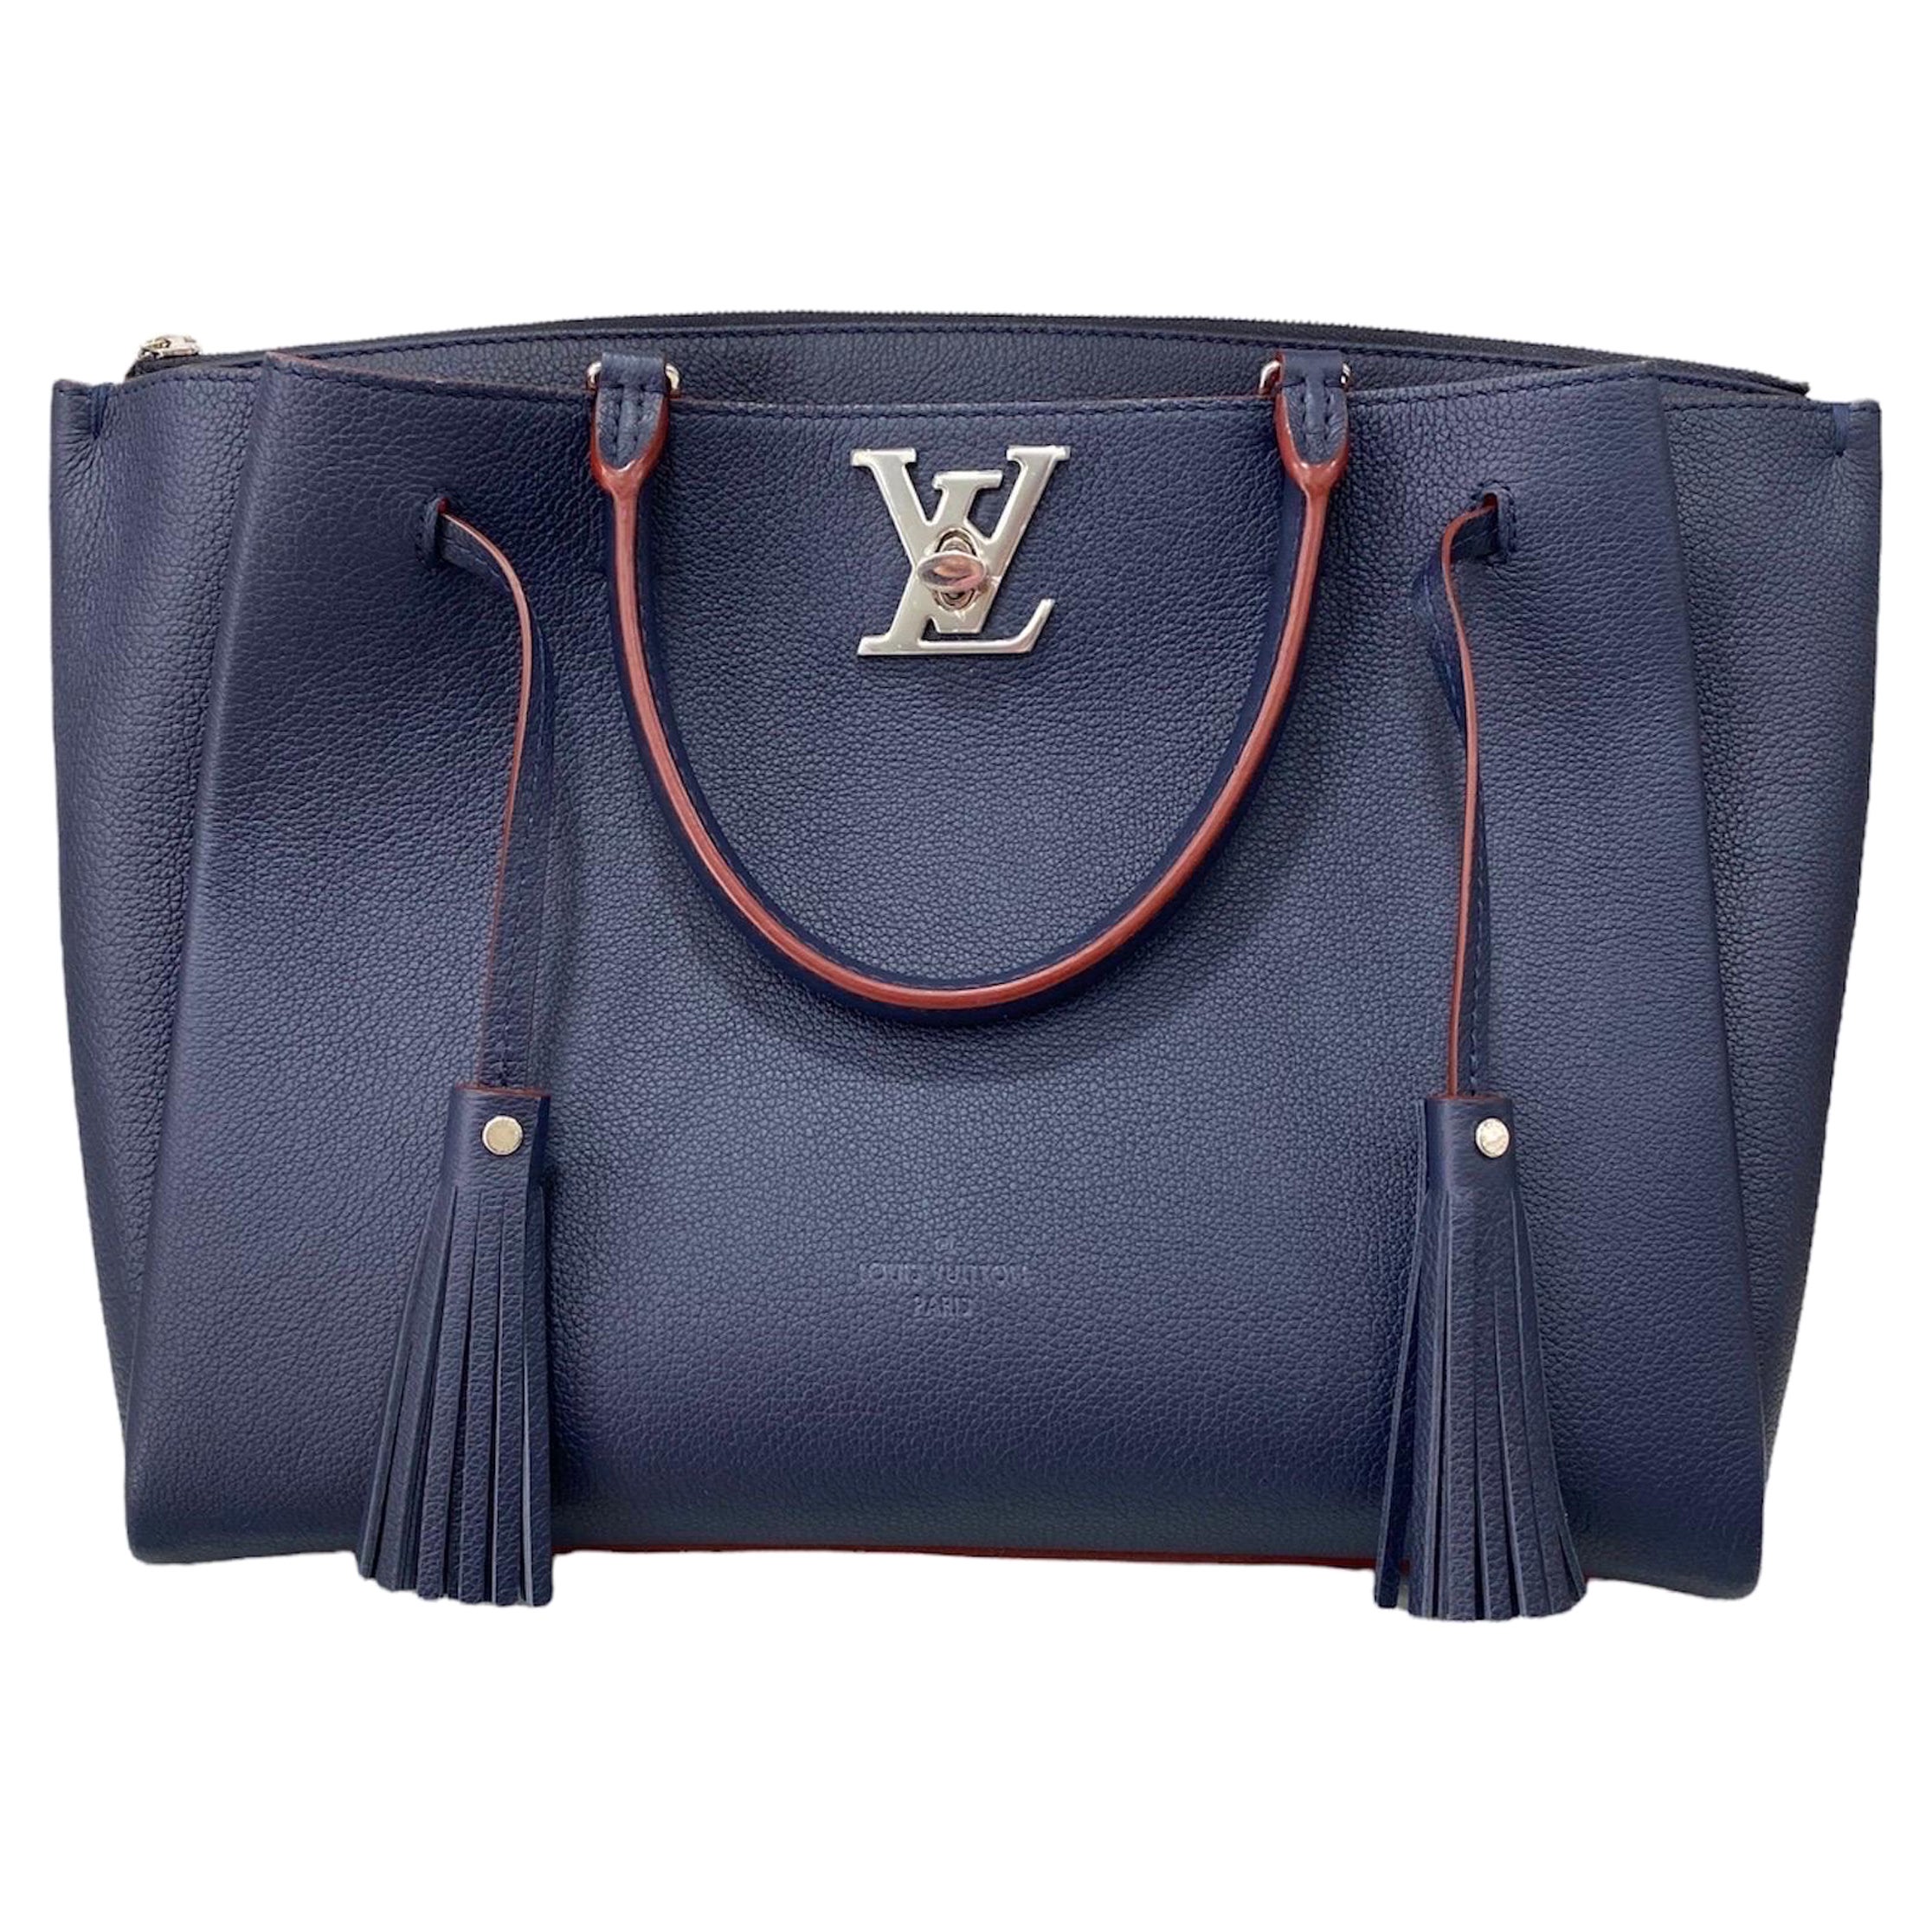 Louis Vuitton - Authenticated Lockme Bucket Handbag - Leather Blue Plain for Women, Good Condition